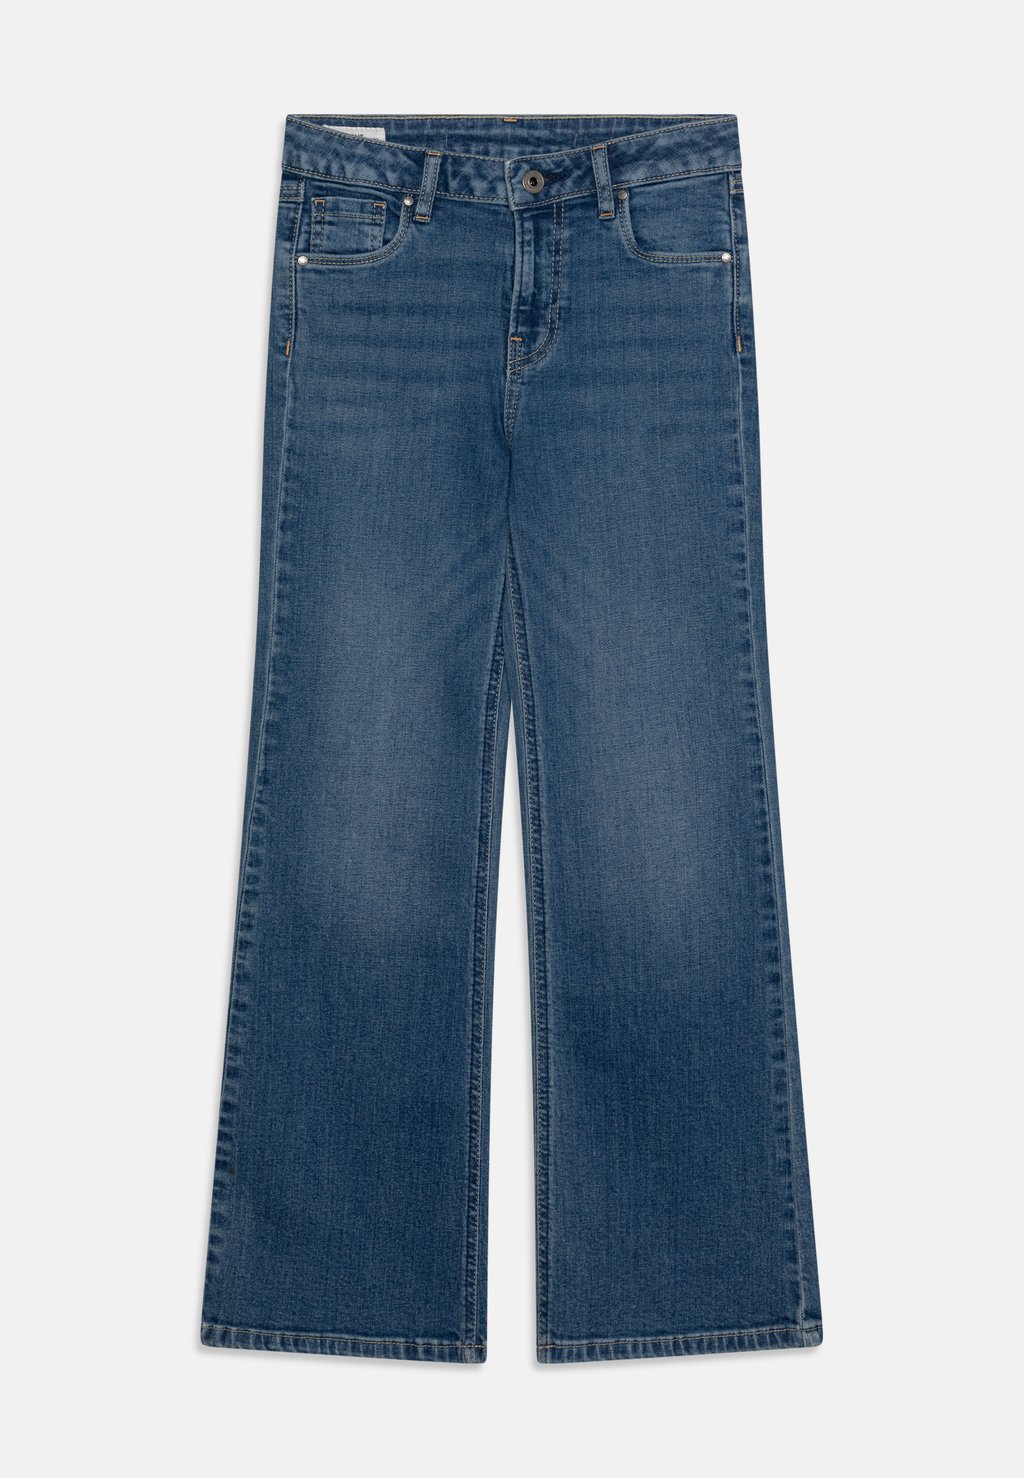 Джинсы-клеш Jr Pepe Jeans, цвет blue denim джинсы клеш skinny fit fade pepe jeans цвет dark blue denim